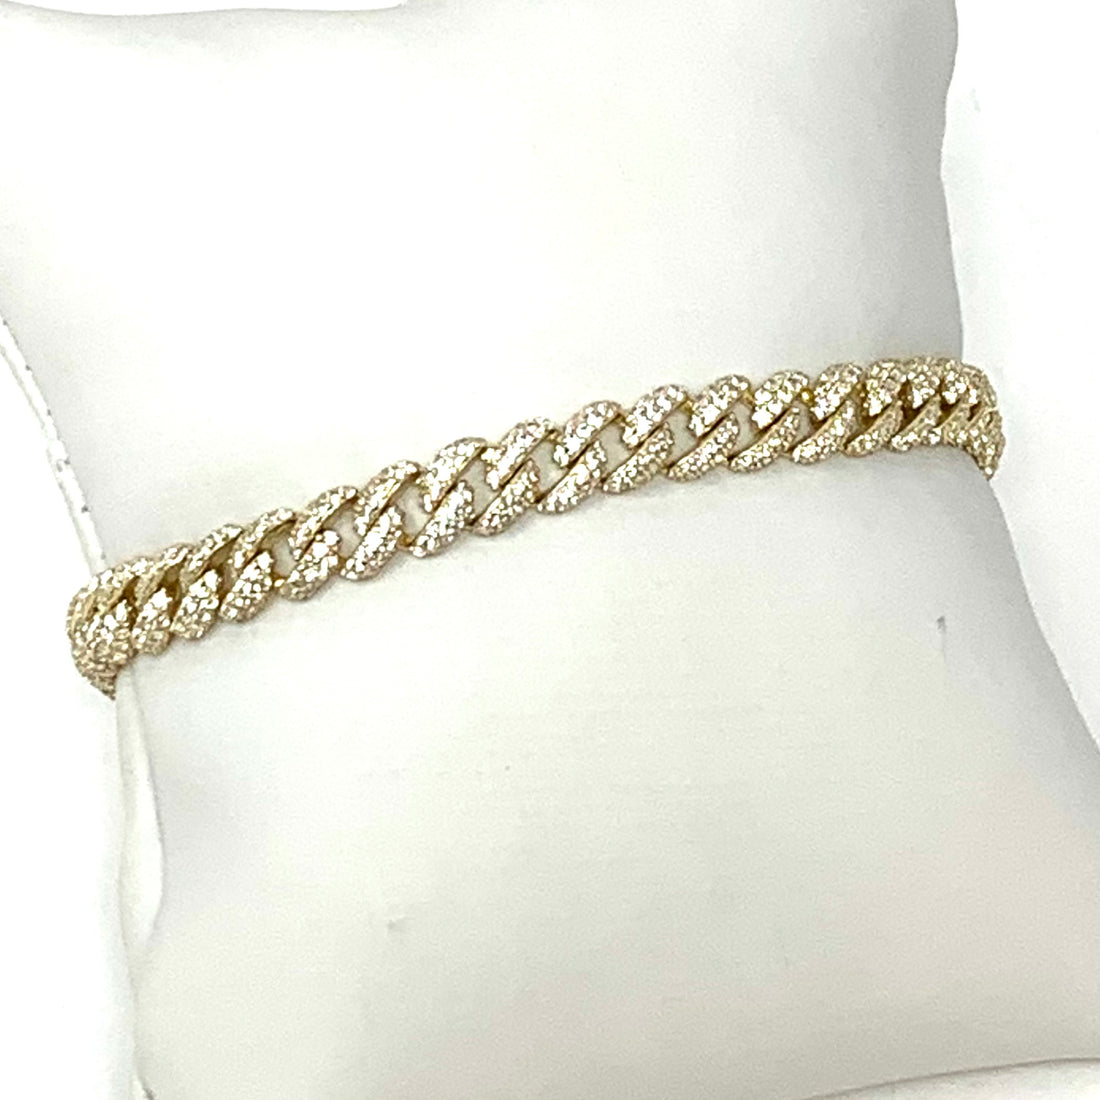 Ross Tennis Bracelet in Gold